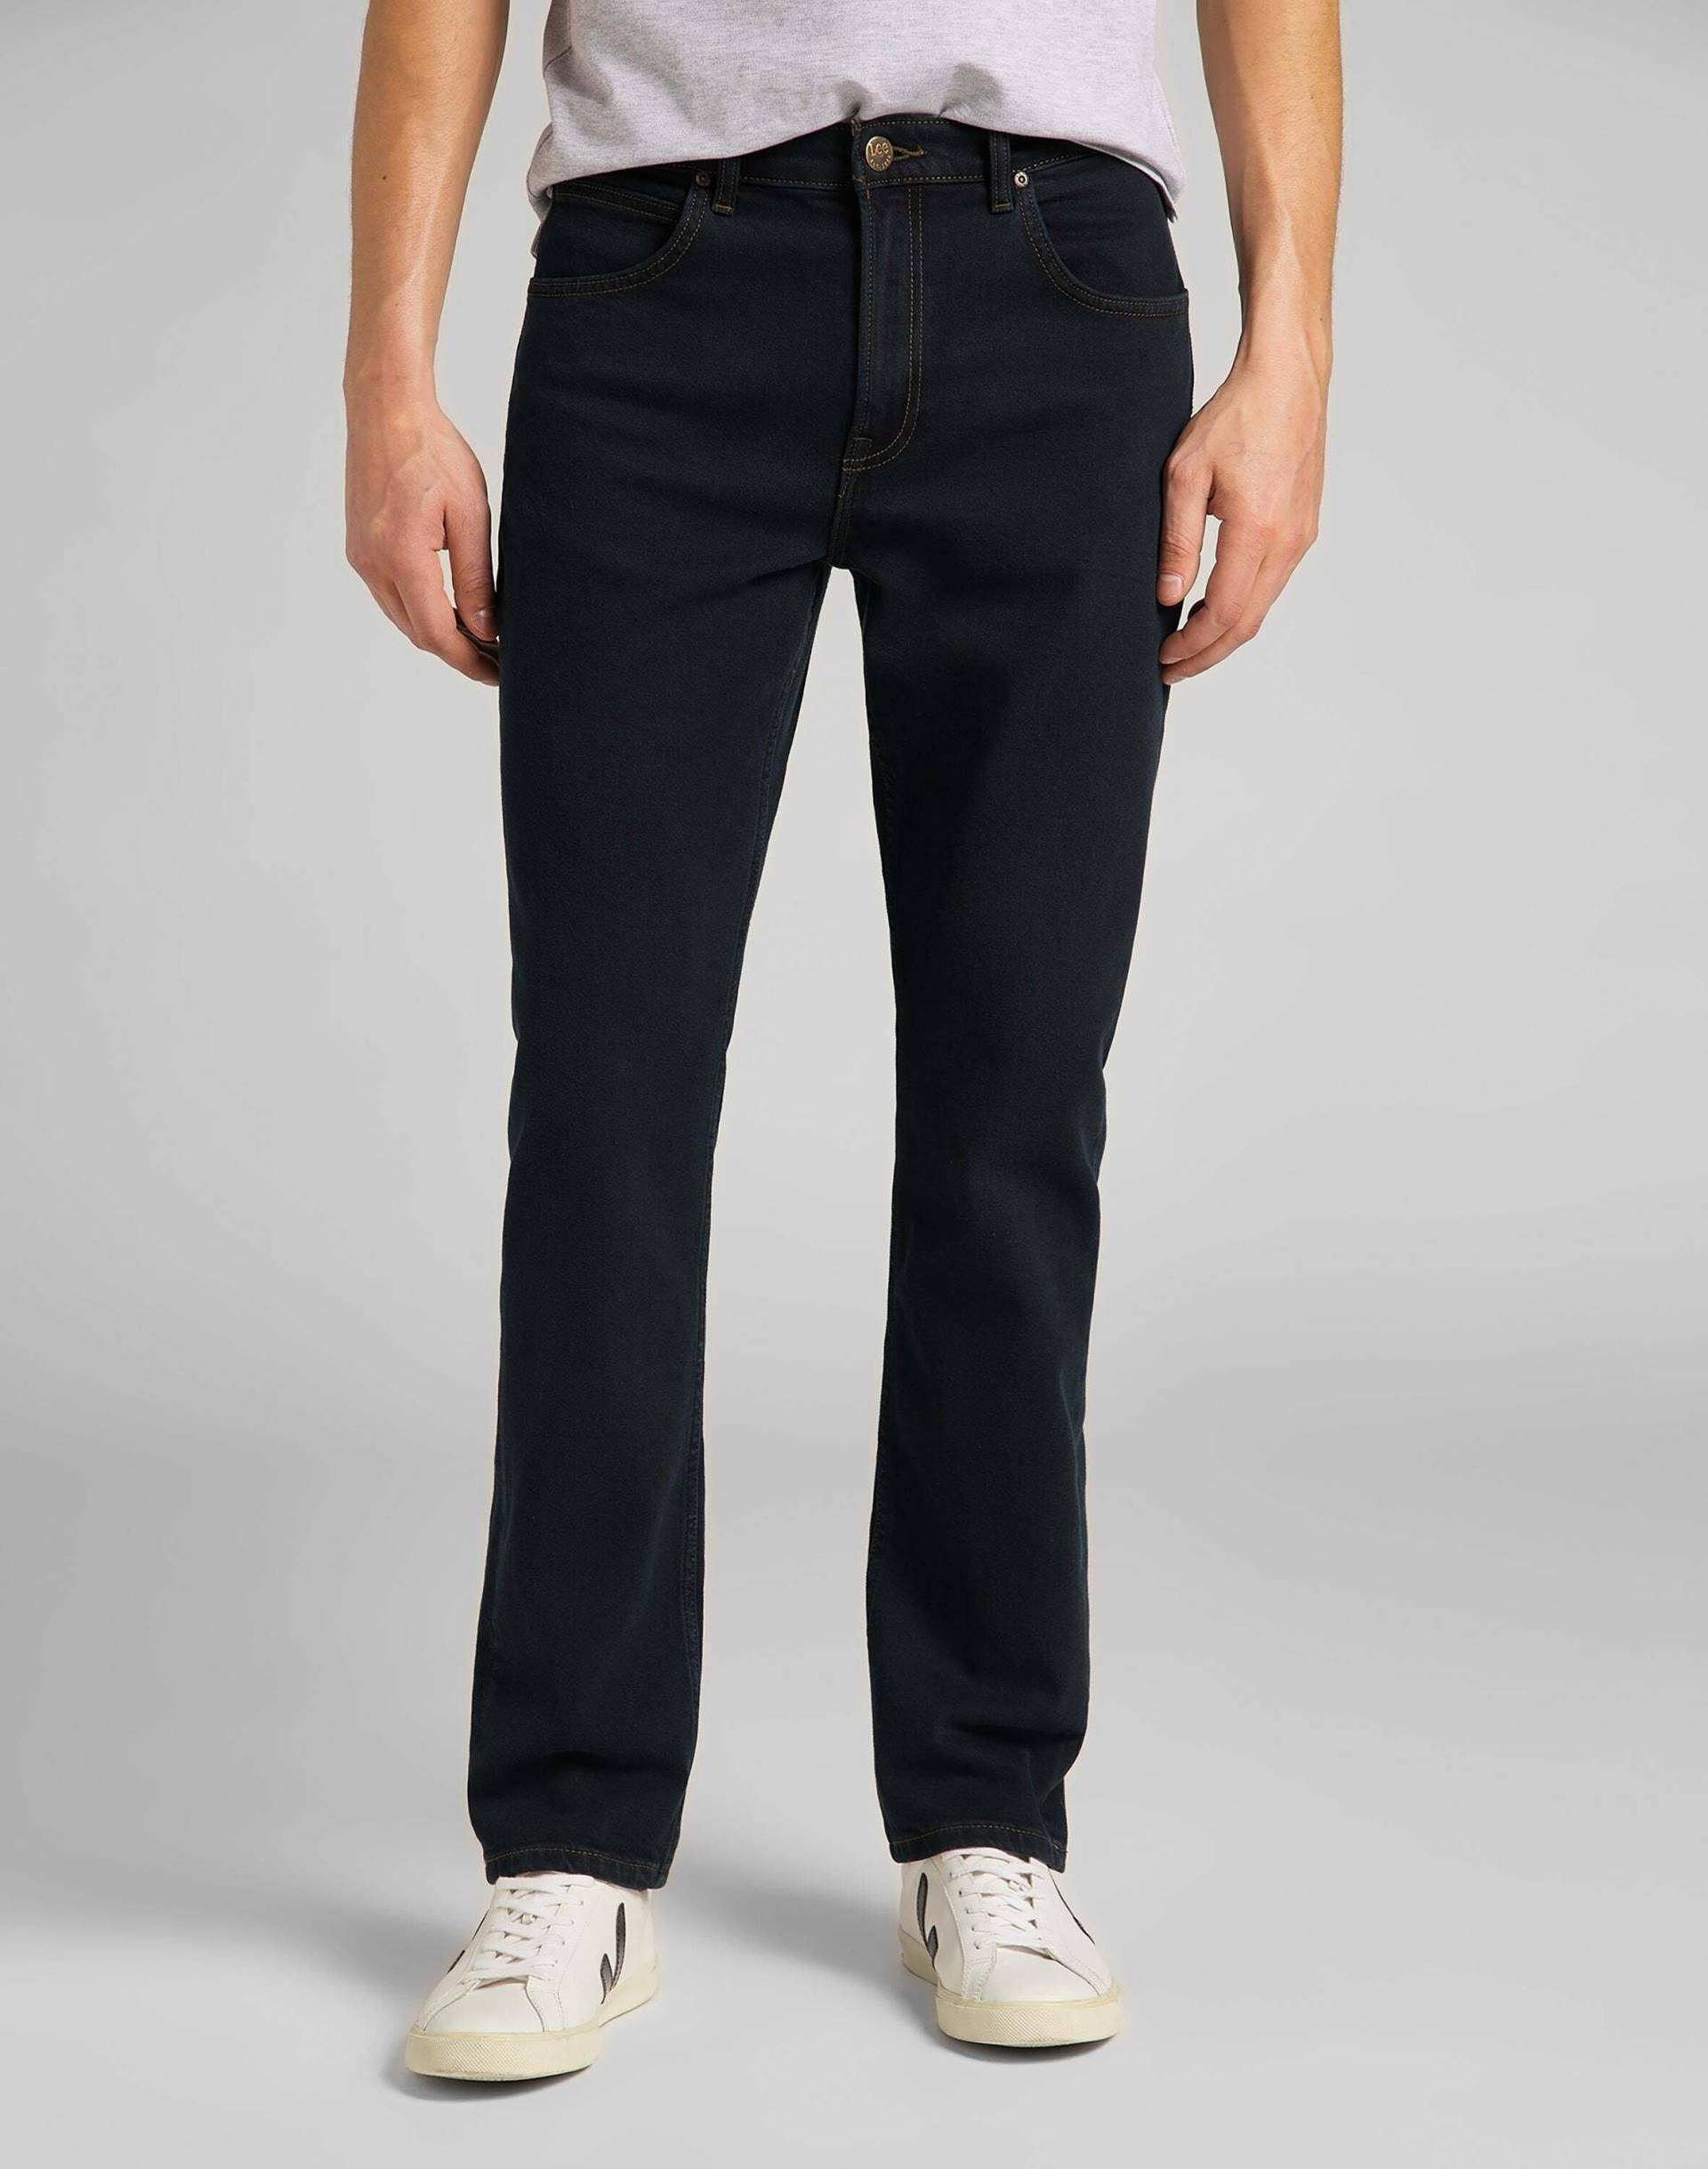 Jeans Straight Leg Brooklyn Herren Blau Denim L34/W42 von Lee